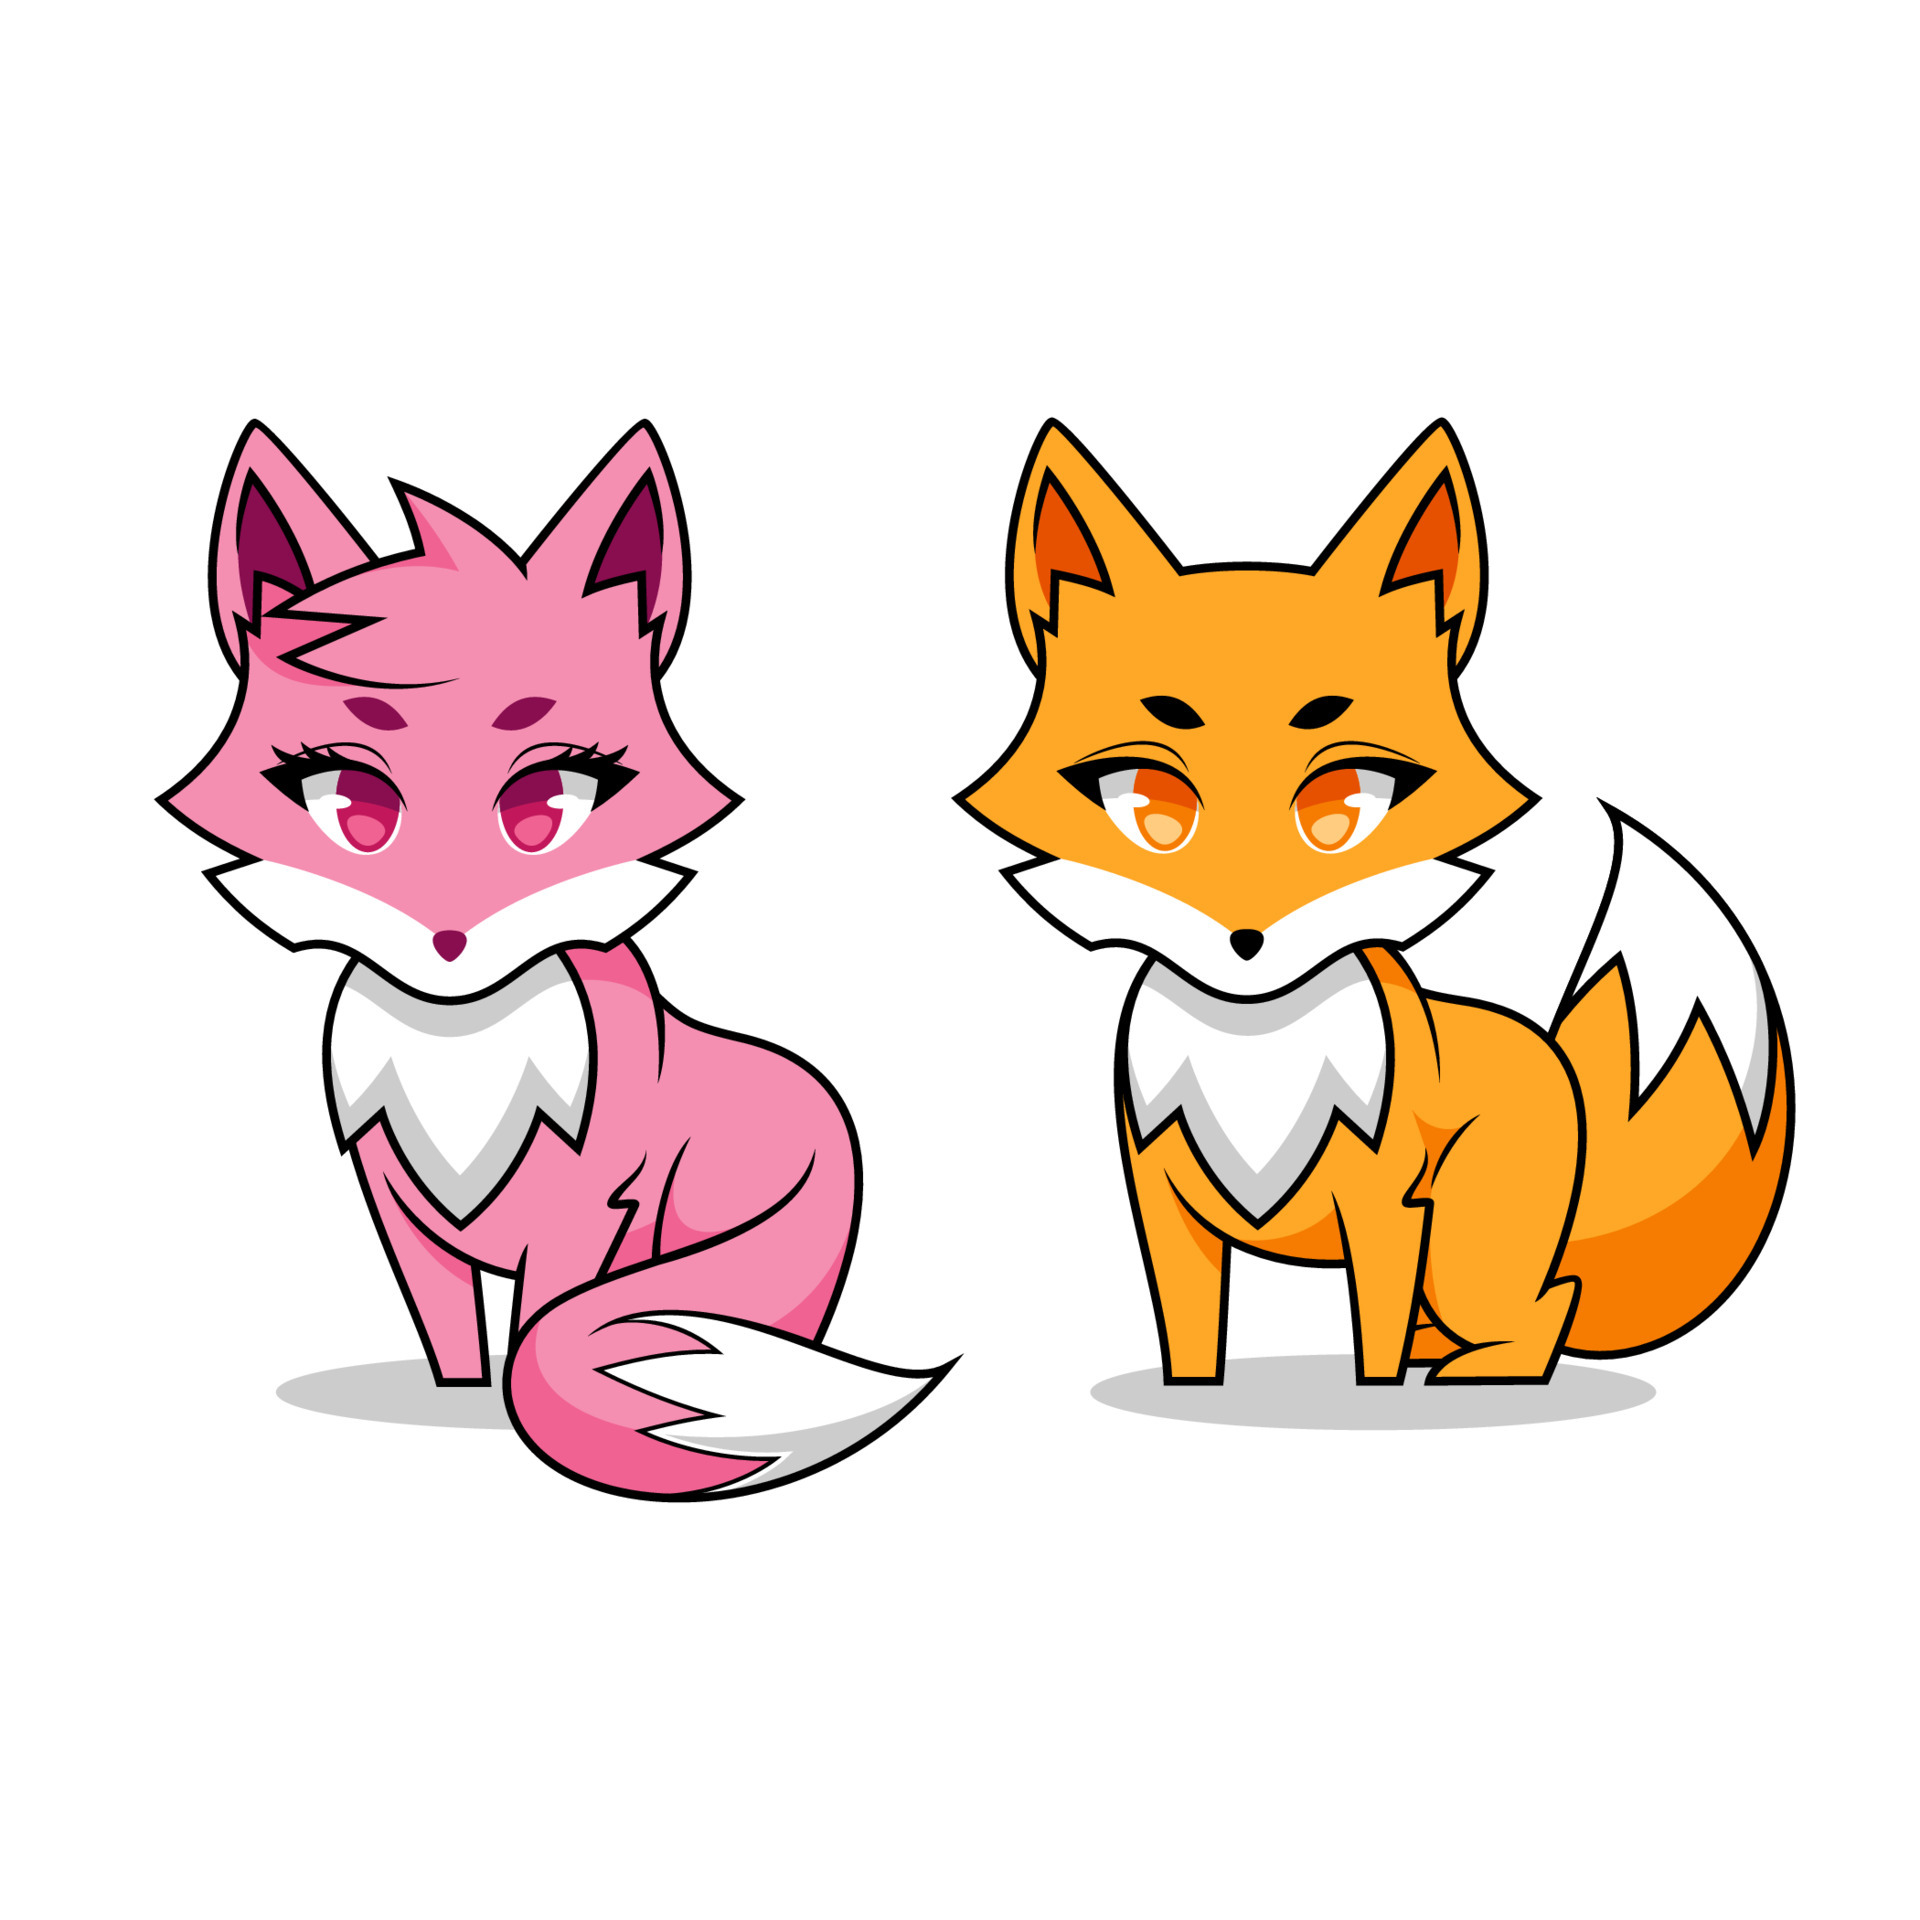 Kitsune - Fox Girl Fantasy - Anime character - Game ready - Blender Market-demhanvico.com.vn